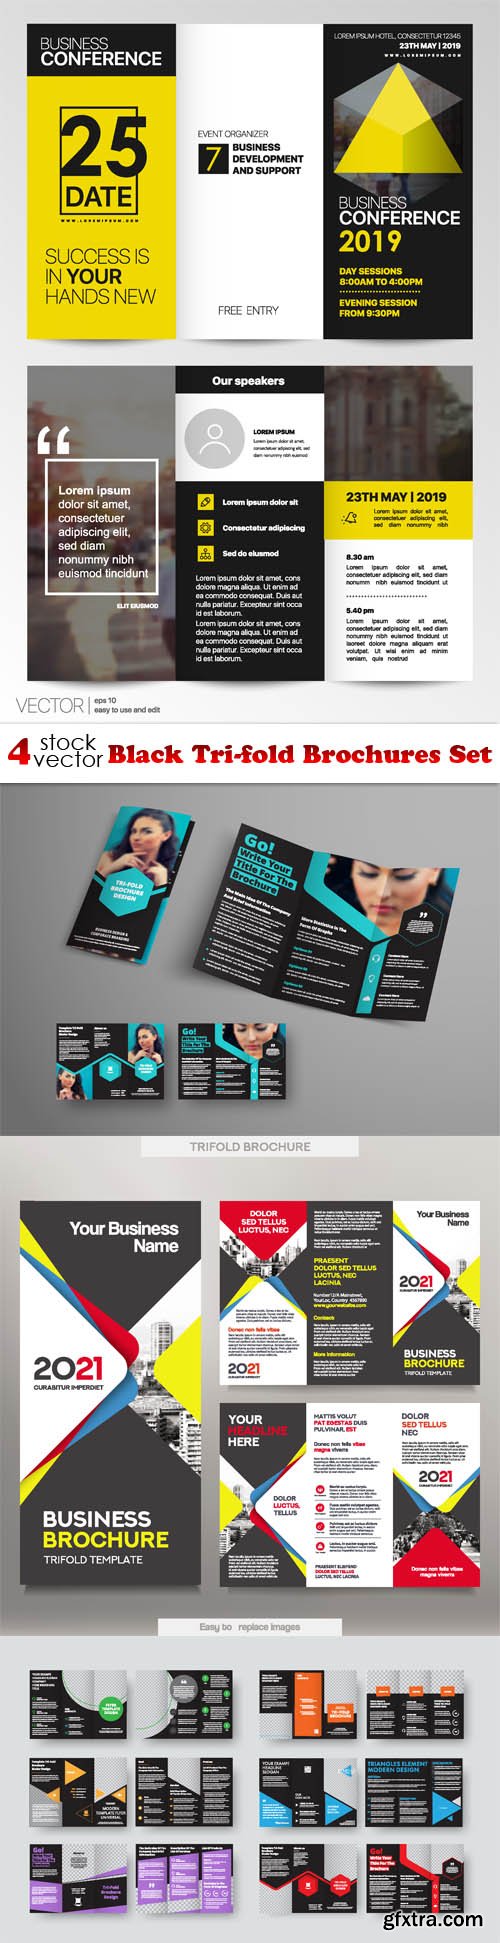 Vectors - Black Tri-fold Brochures Set